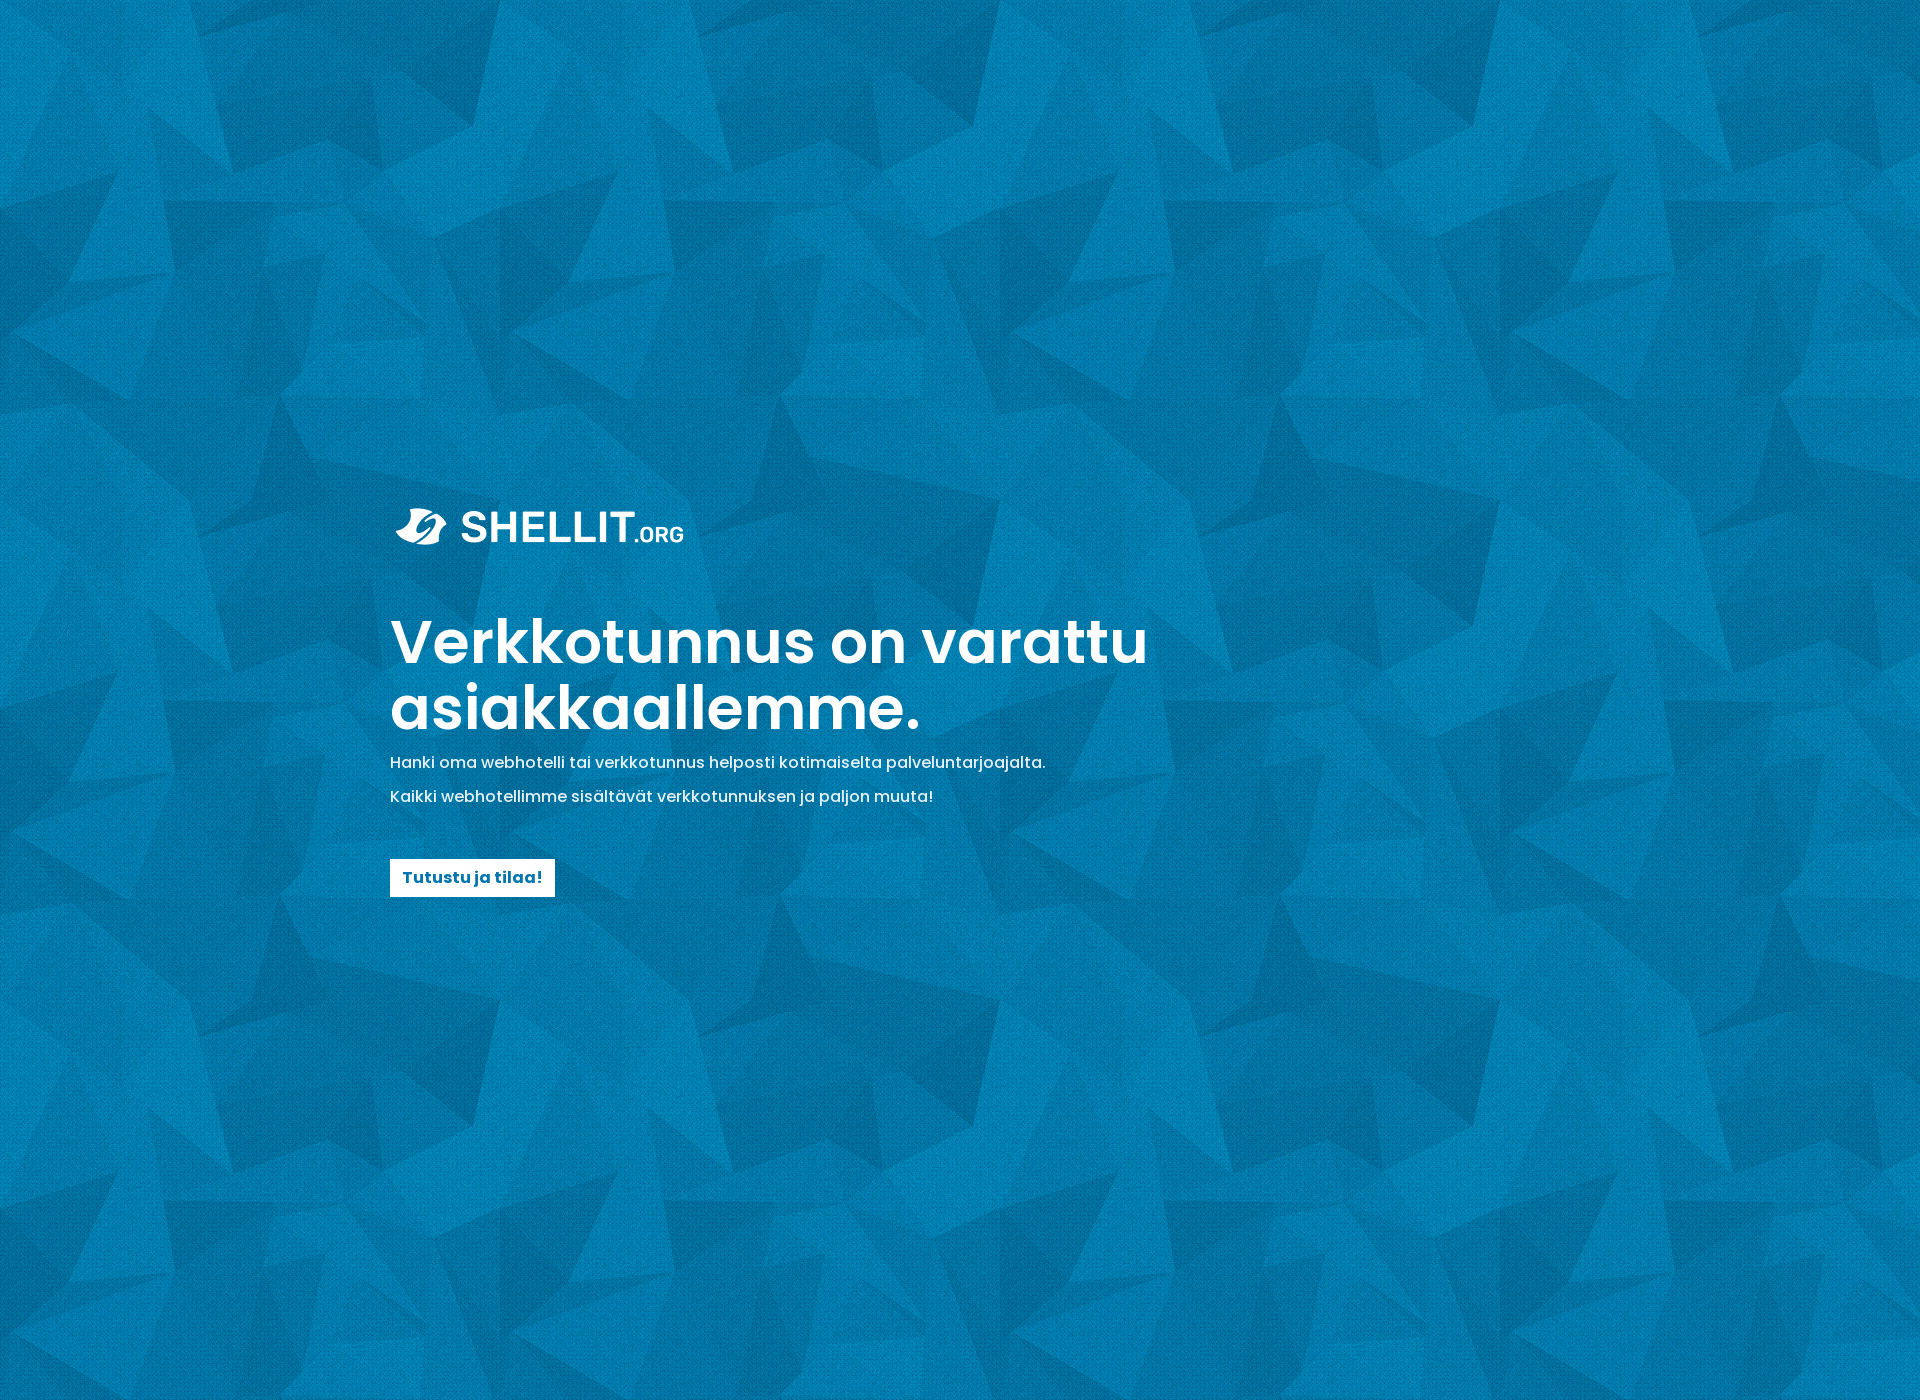 Skärmdump för veropolitiikka.fi